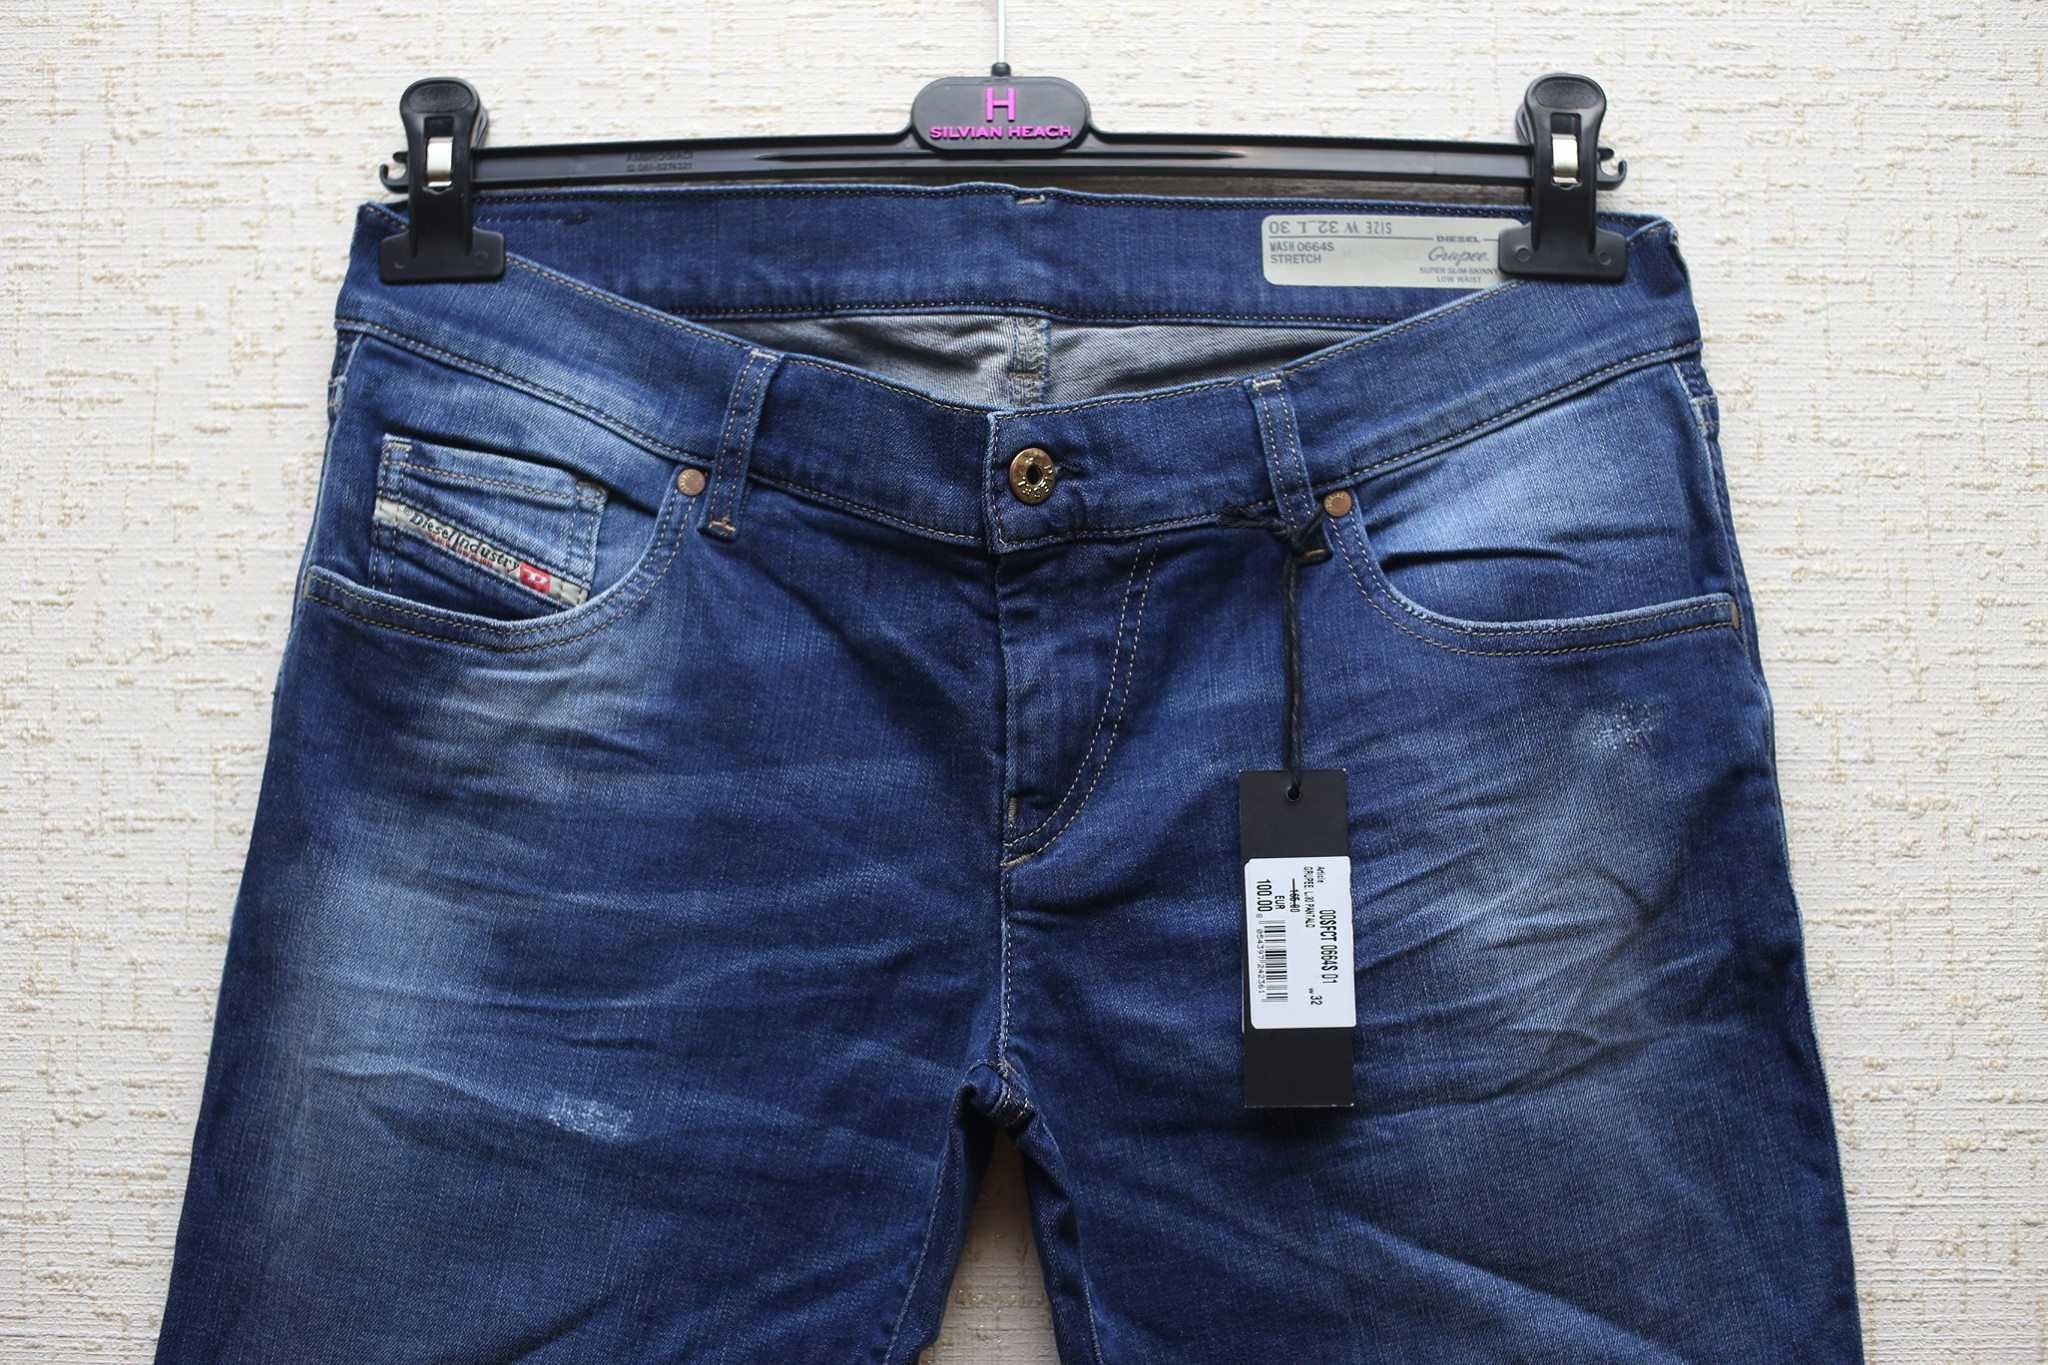 Женские джинсы DIESEL, синего цвета (GRUPEE 0664S)